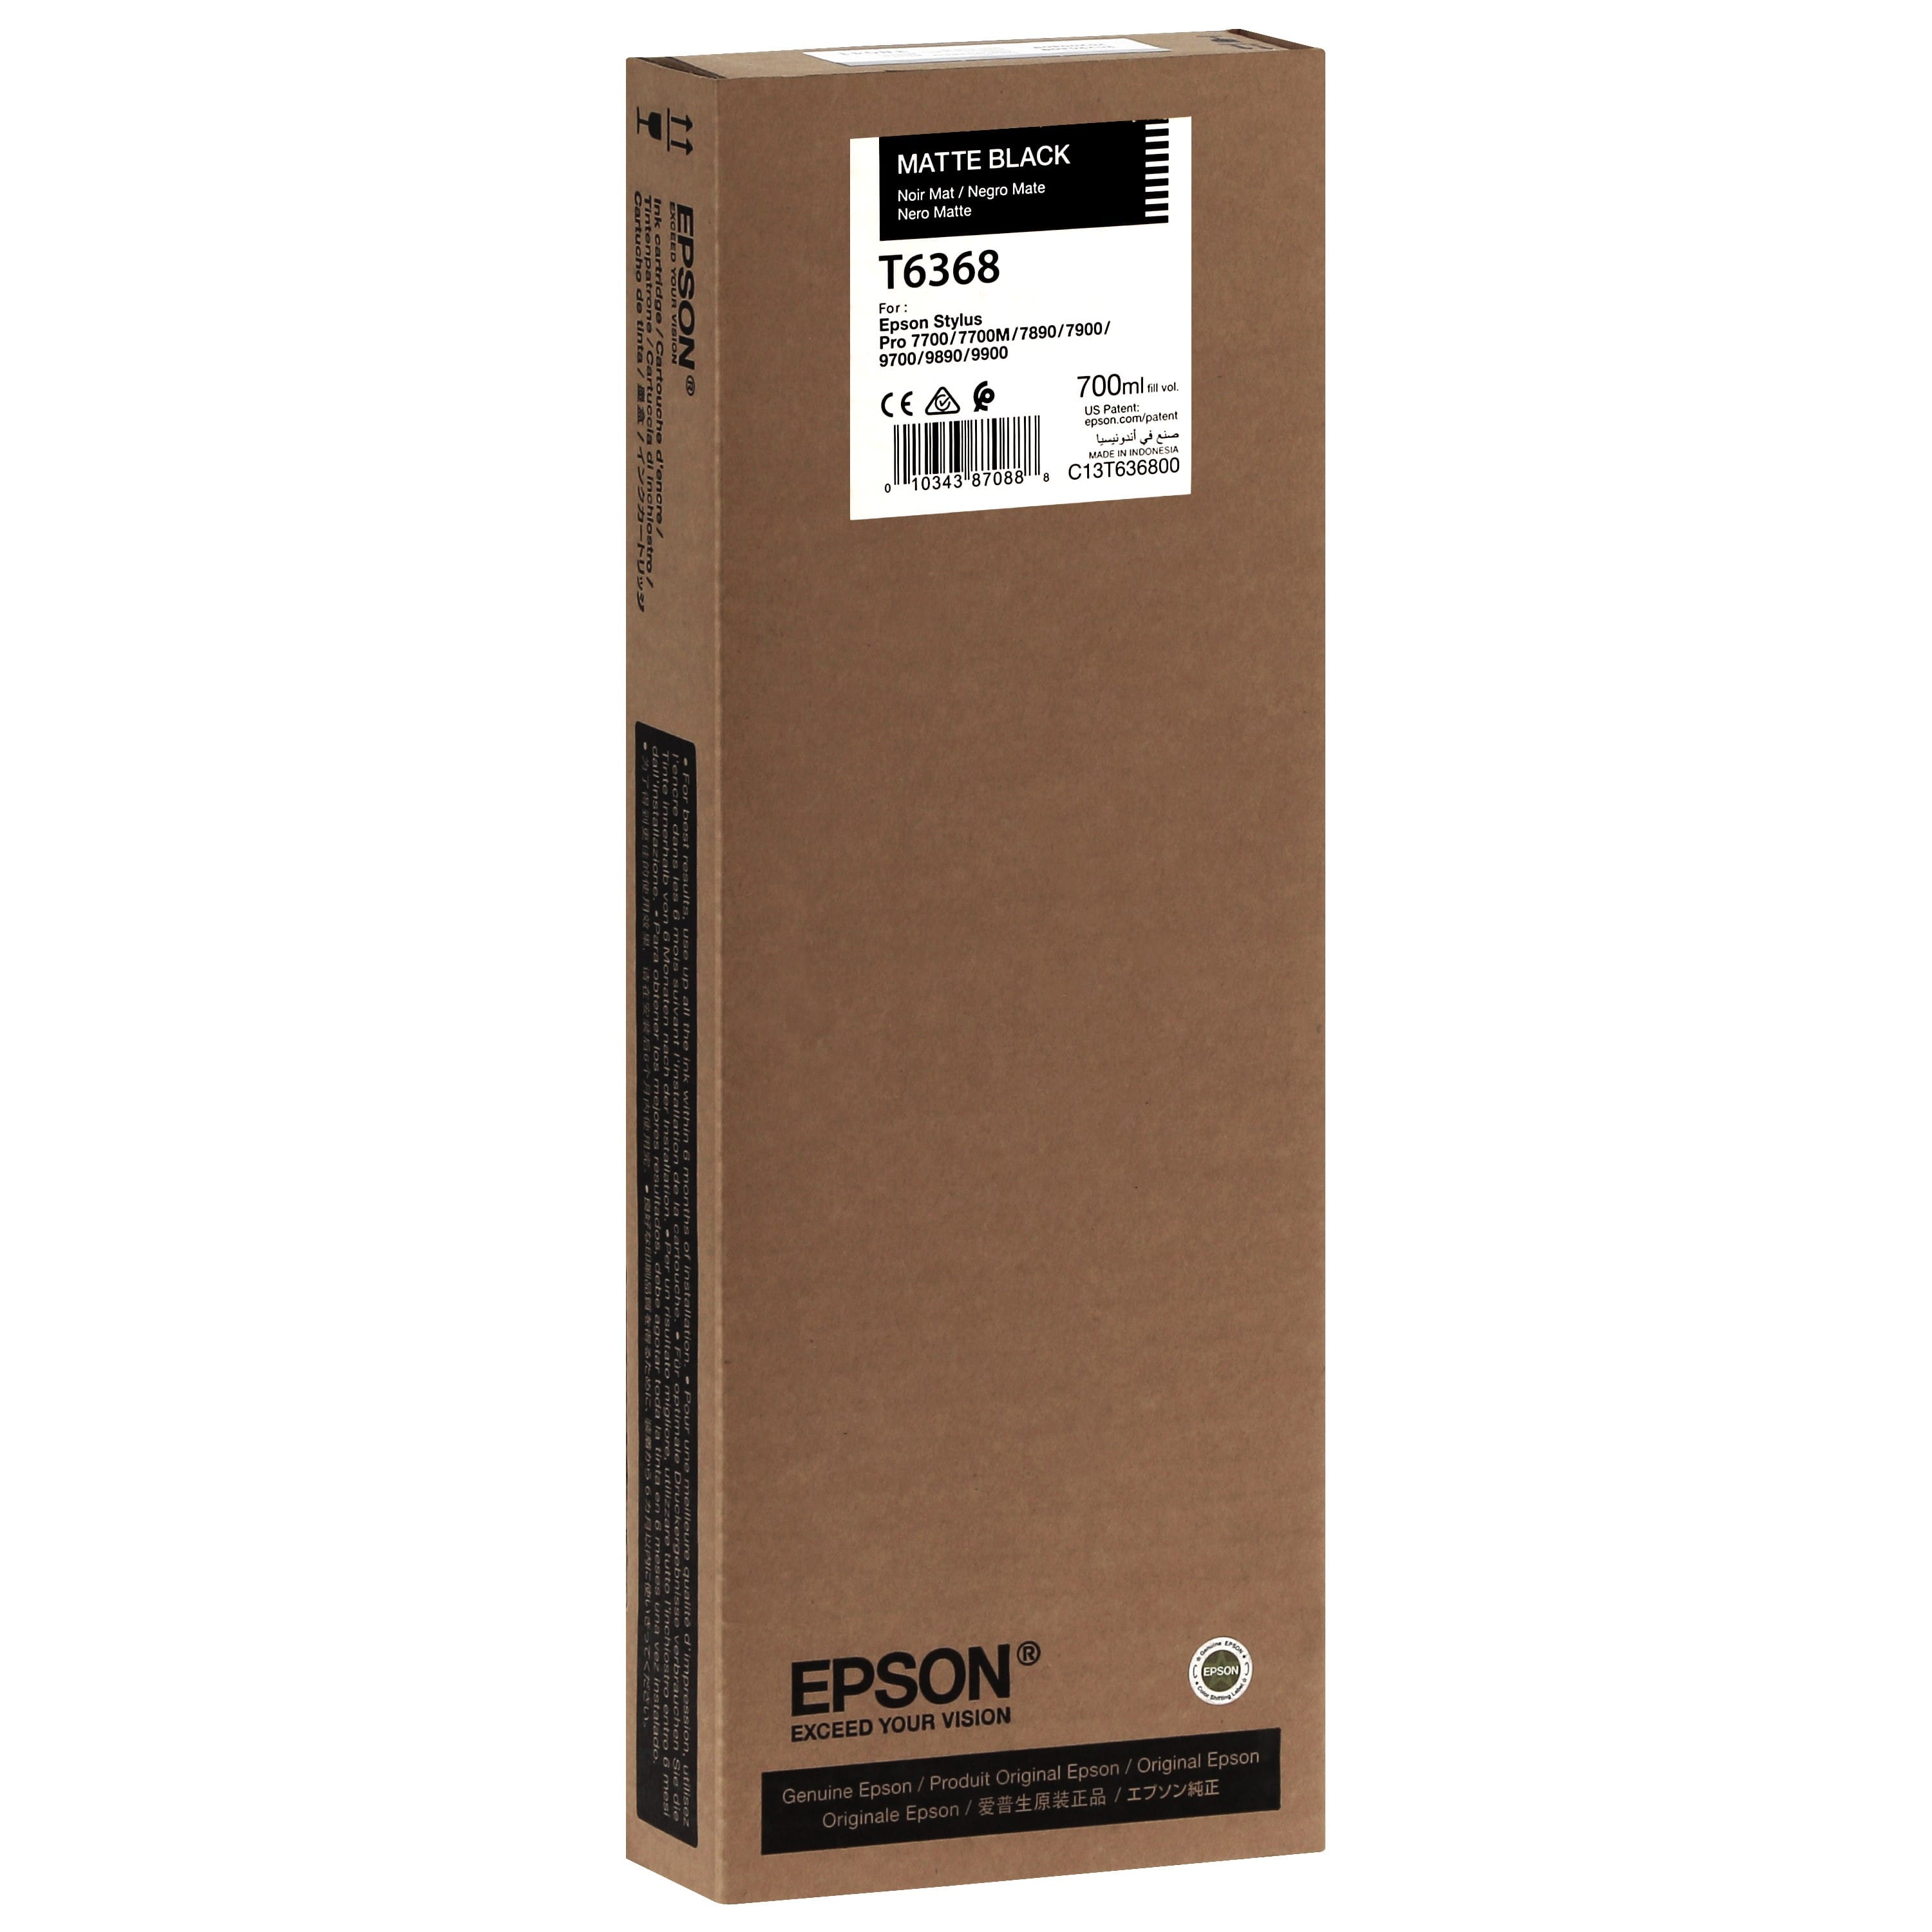 EPSON - Cartouche d'encre traceur T6368 Pour imprimante 7700/9700/7890/9890/7900/9900 Noir mat - 700ml